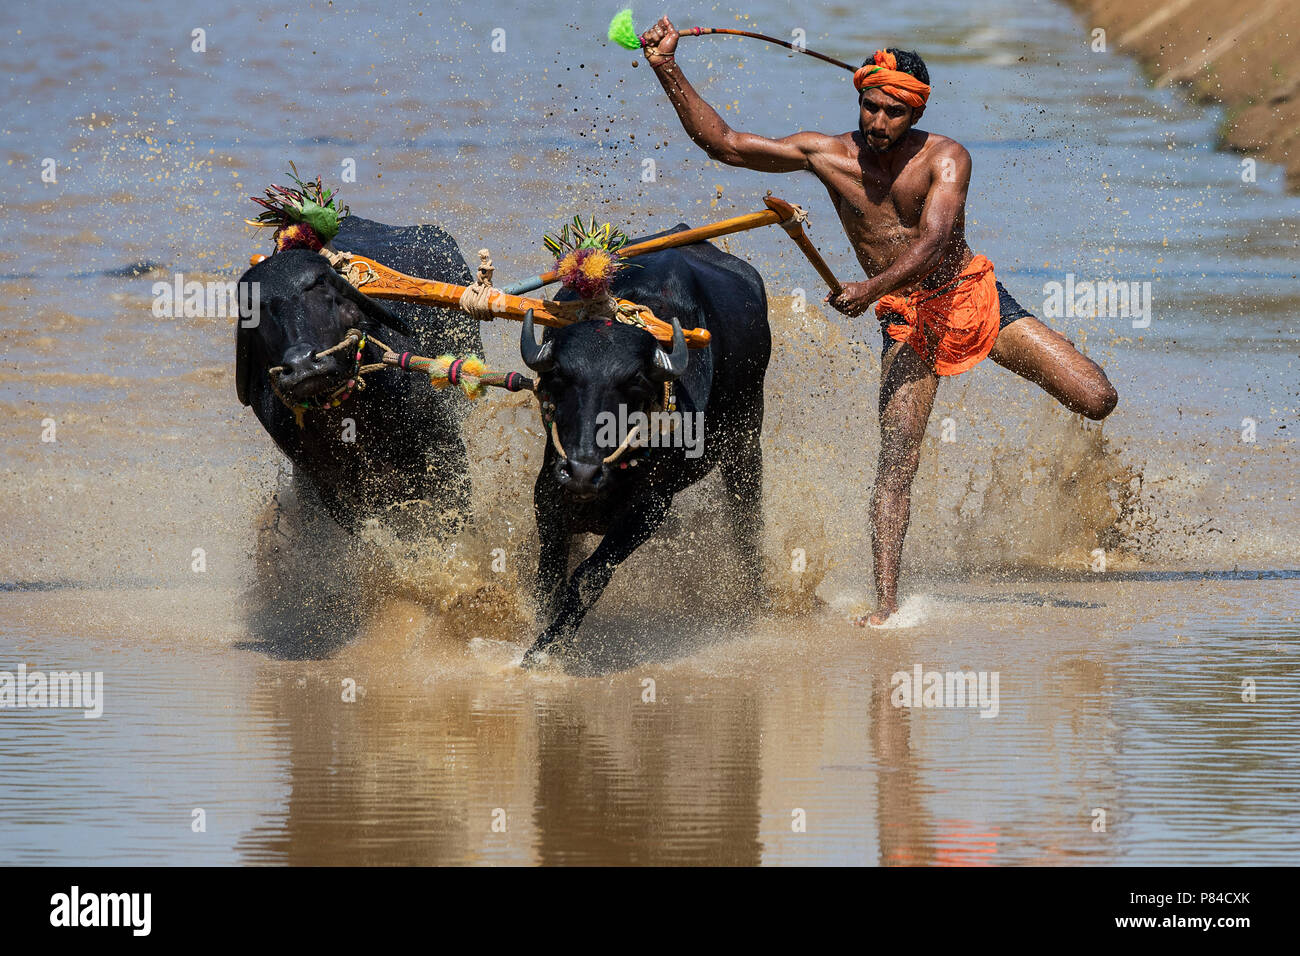 The image of Kambala festival buffalo race in Mangalore, India Stock Photo